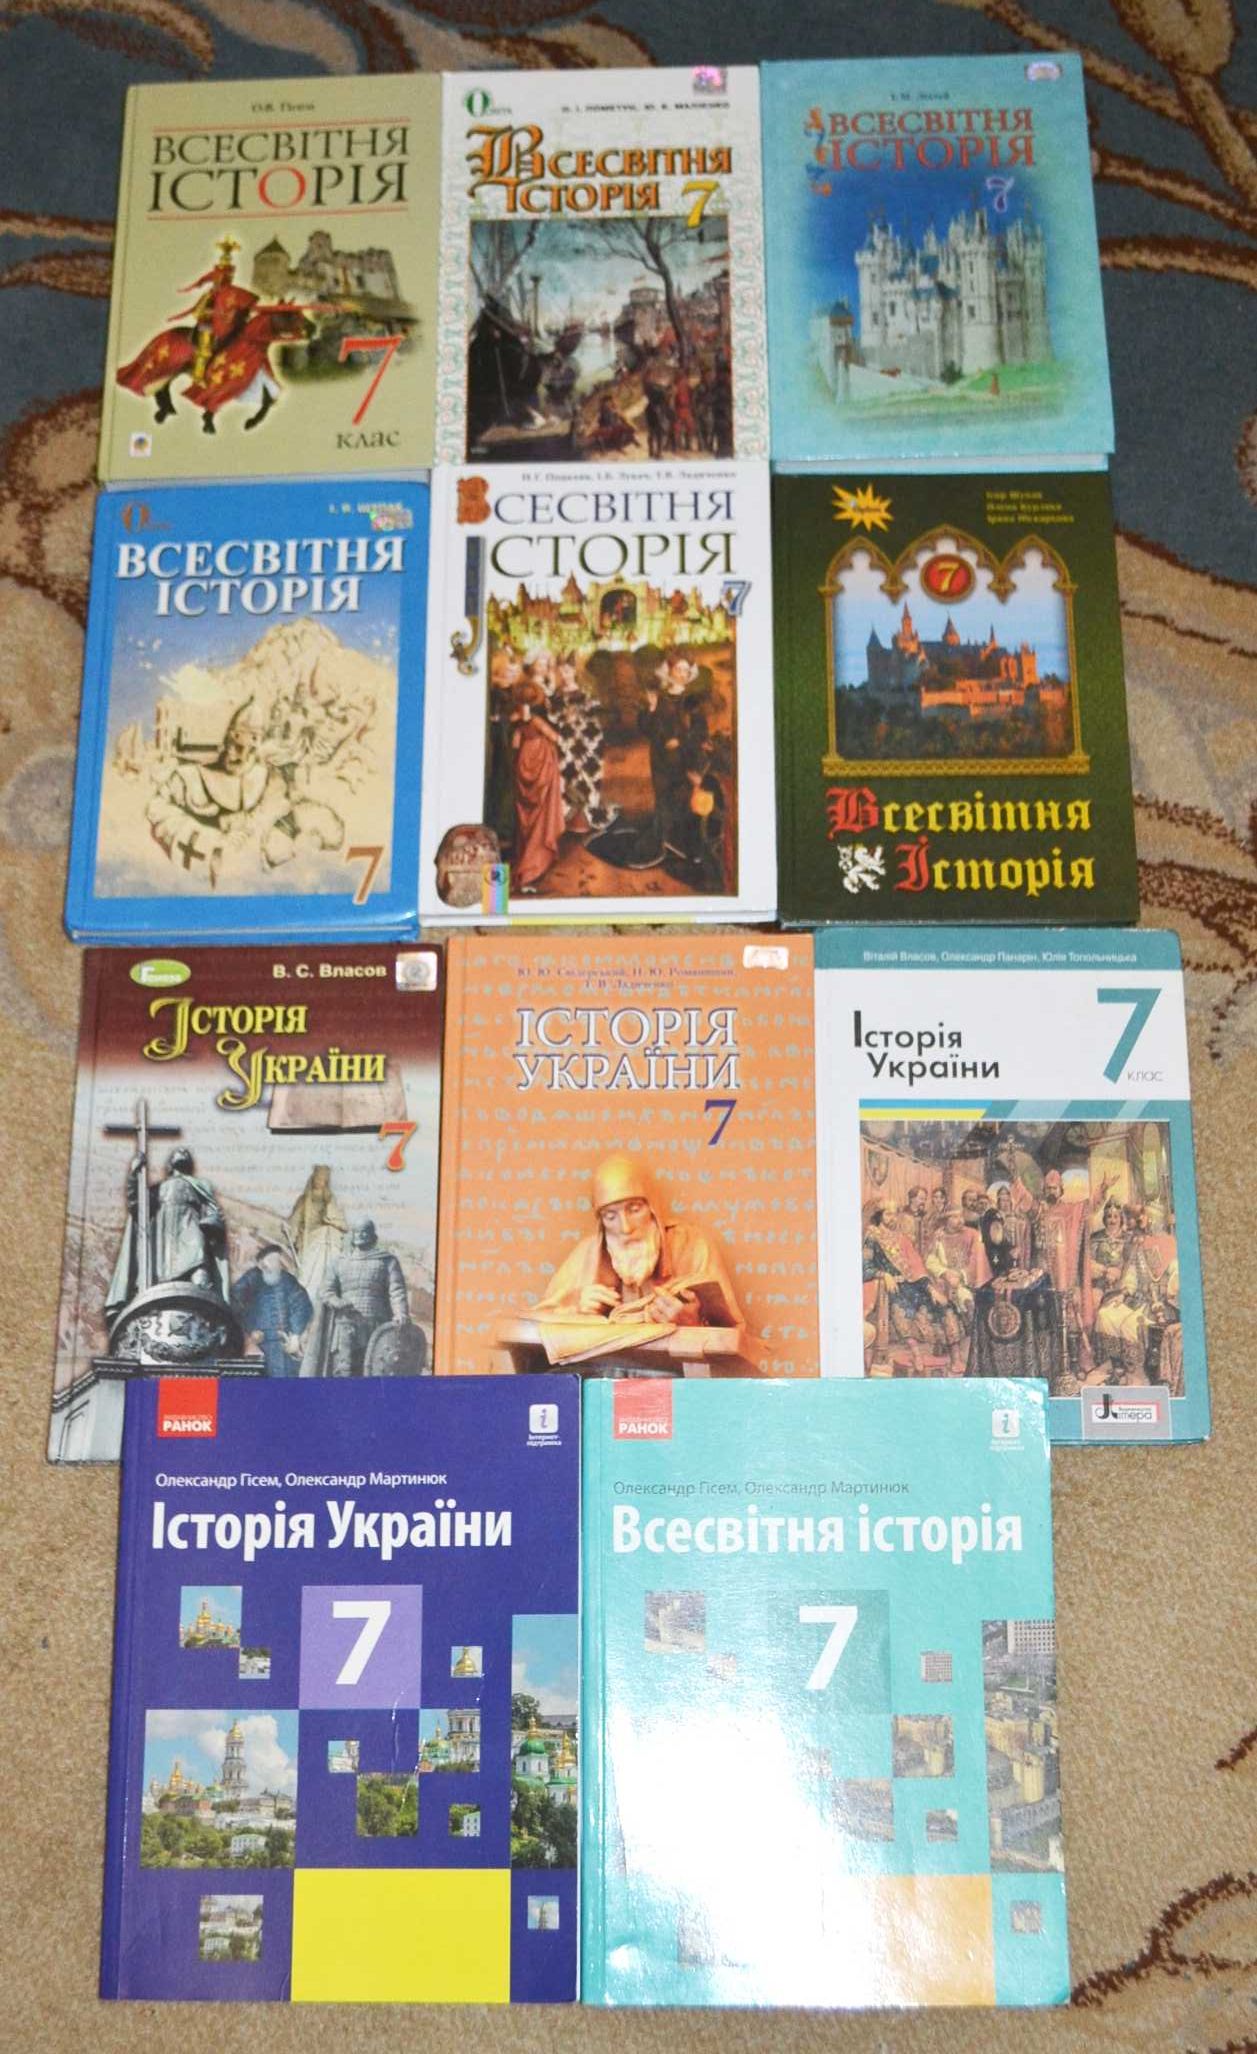 Підручники для 7 класу Історія України,всесвітня історія